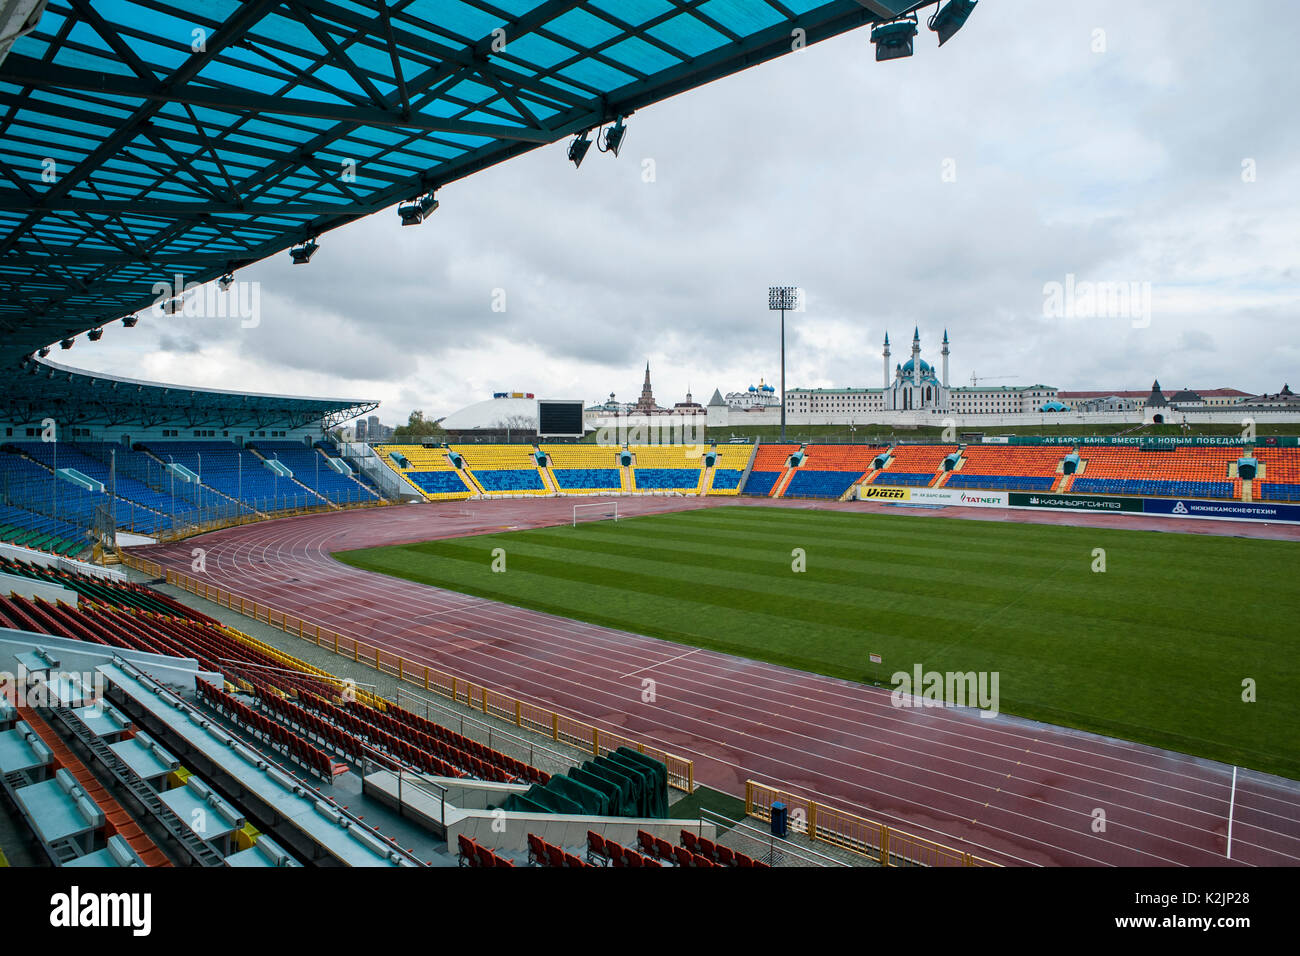 Kazan Rubin Central Stadium, casa del Rubin Kazan squadra di calcio che verrà utilizzata come campo di allenamento durante la Coppa del mondo. Costruzione e ristrutturazione di stadi di calcio in Russia è una corsa contro il tempo come la Russia è impostato per ospitare il 2018 FIFA World Cup durante i mesi di giugno e luglio 2018. Foto Stock